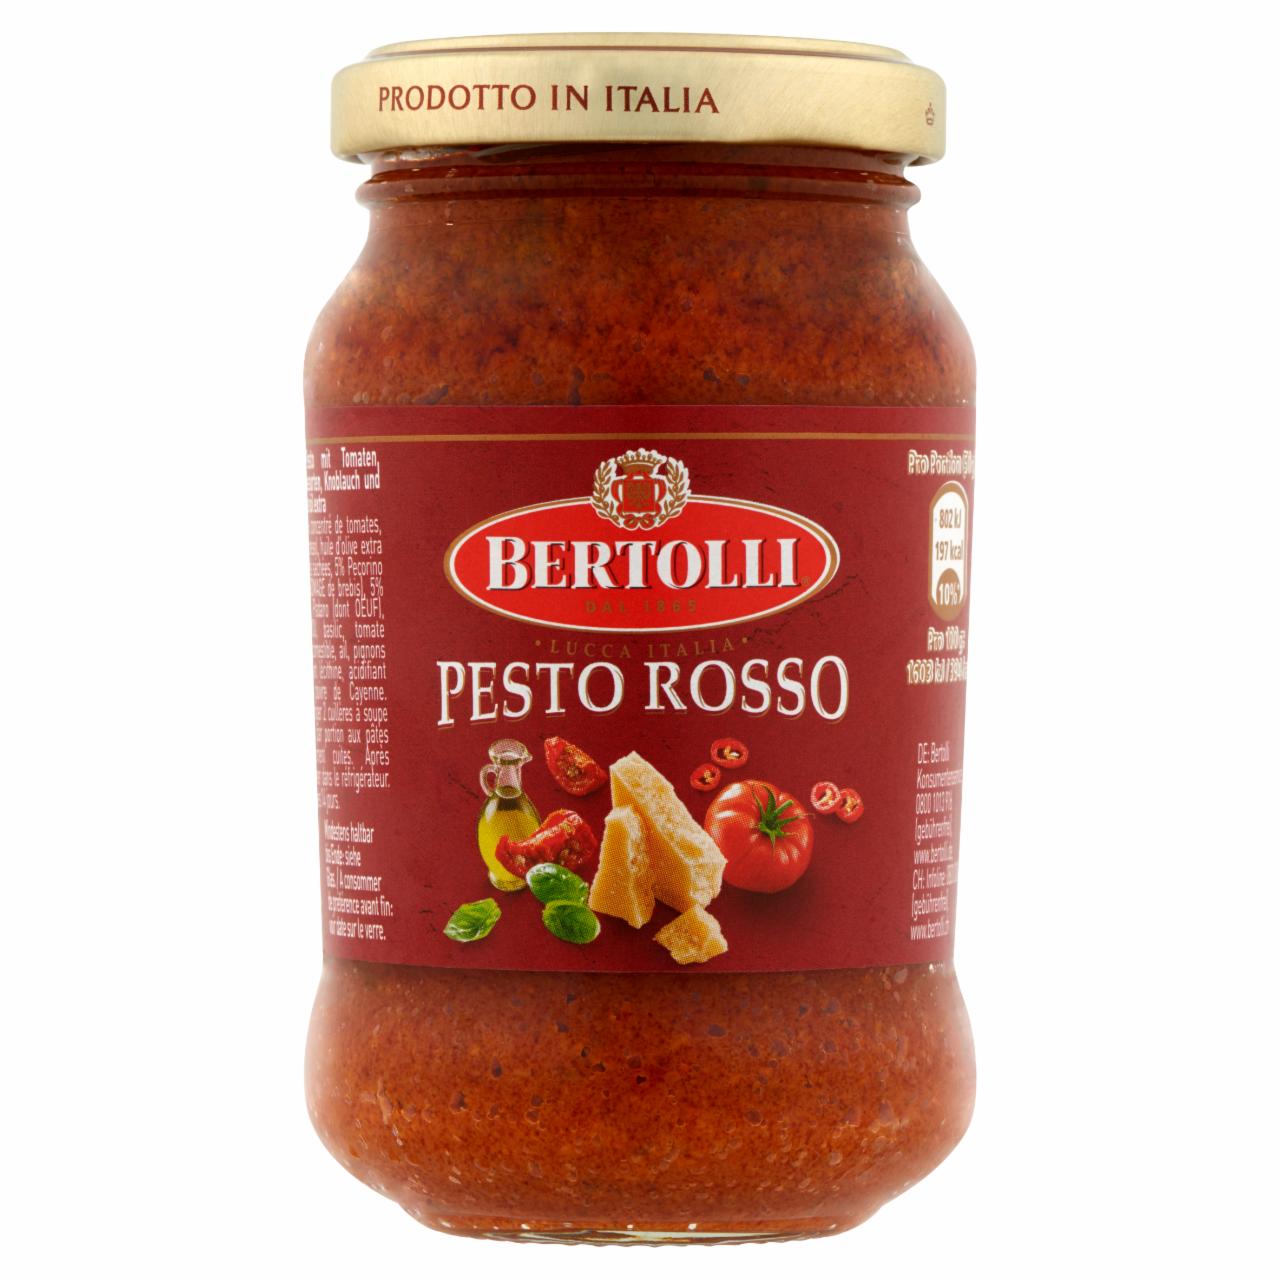 Képek - Bertolli Pesto Rosso bazsalikommal ízesített paradicsomos tésztaszósz 185 g